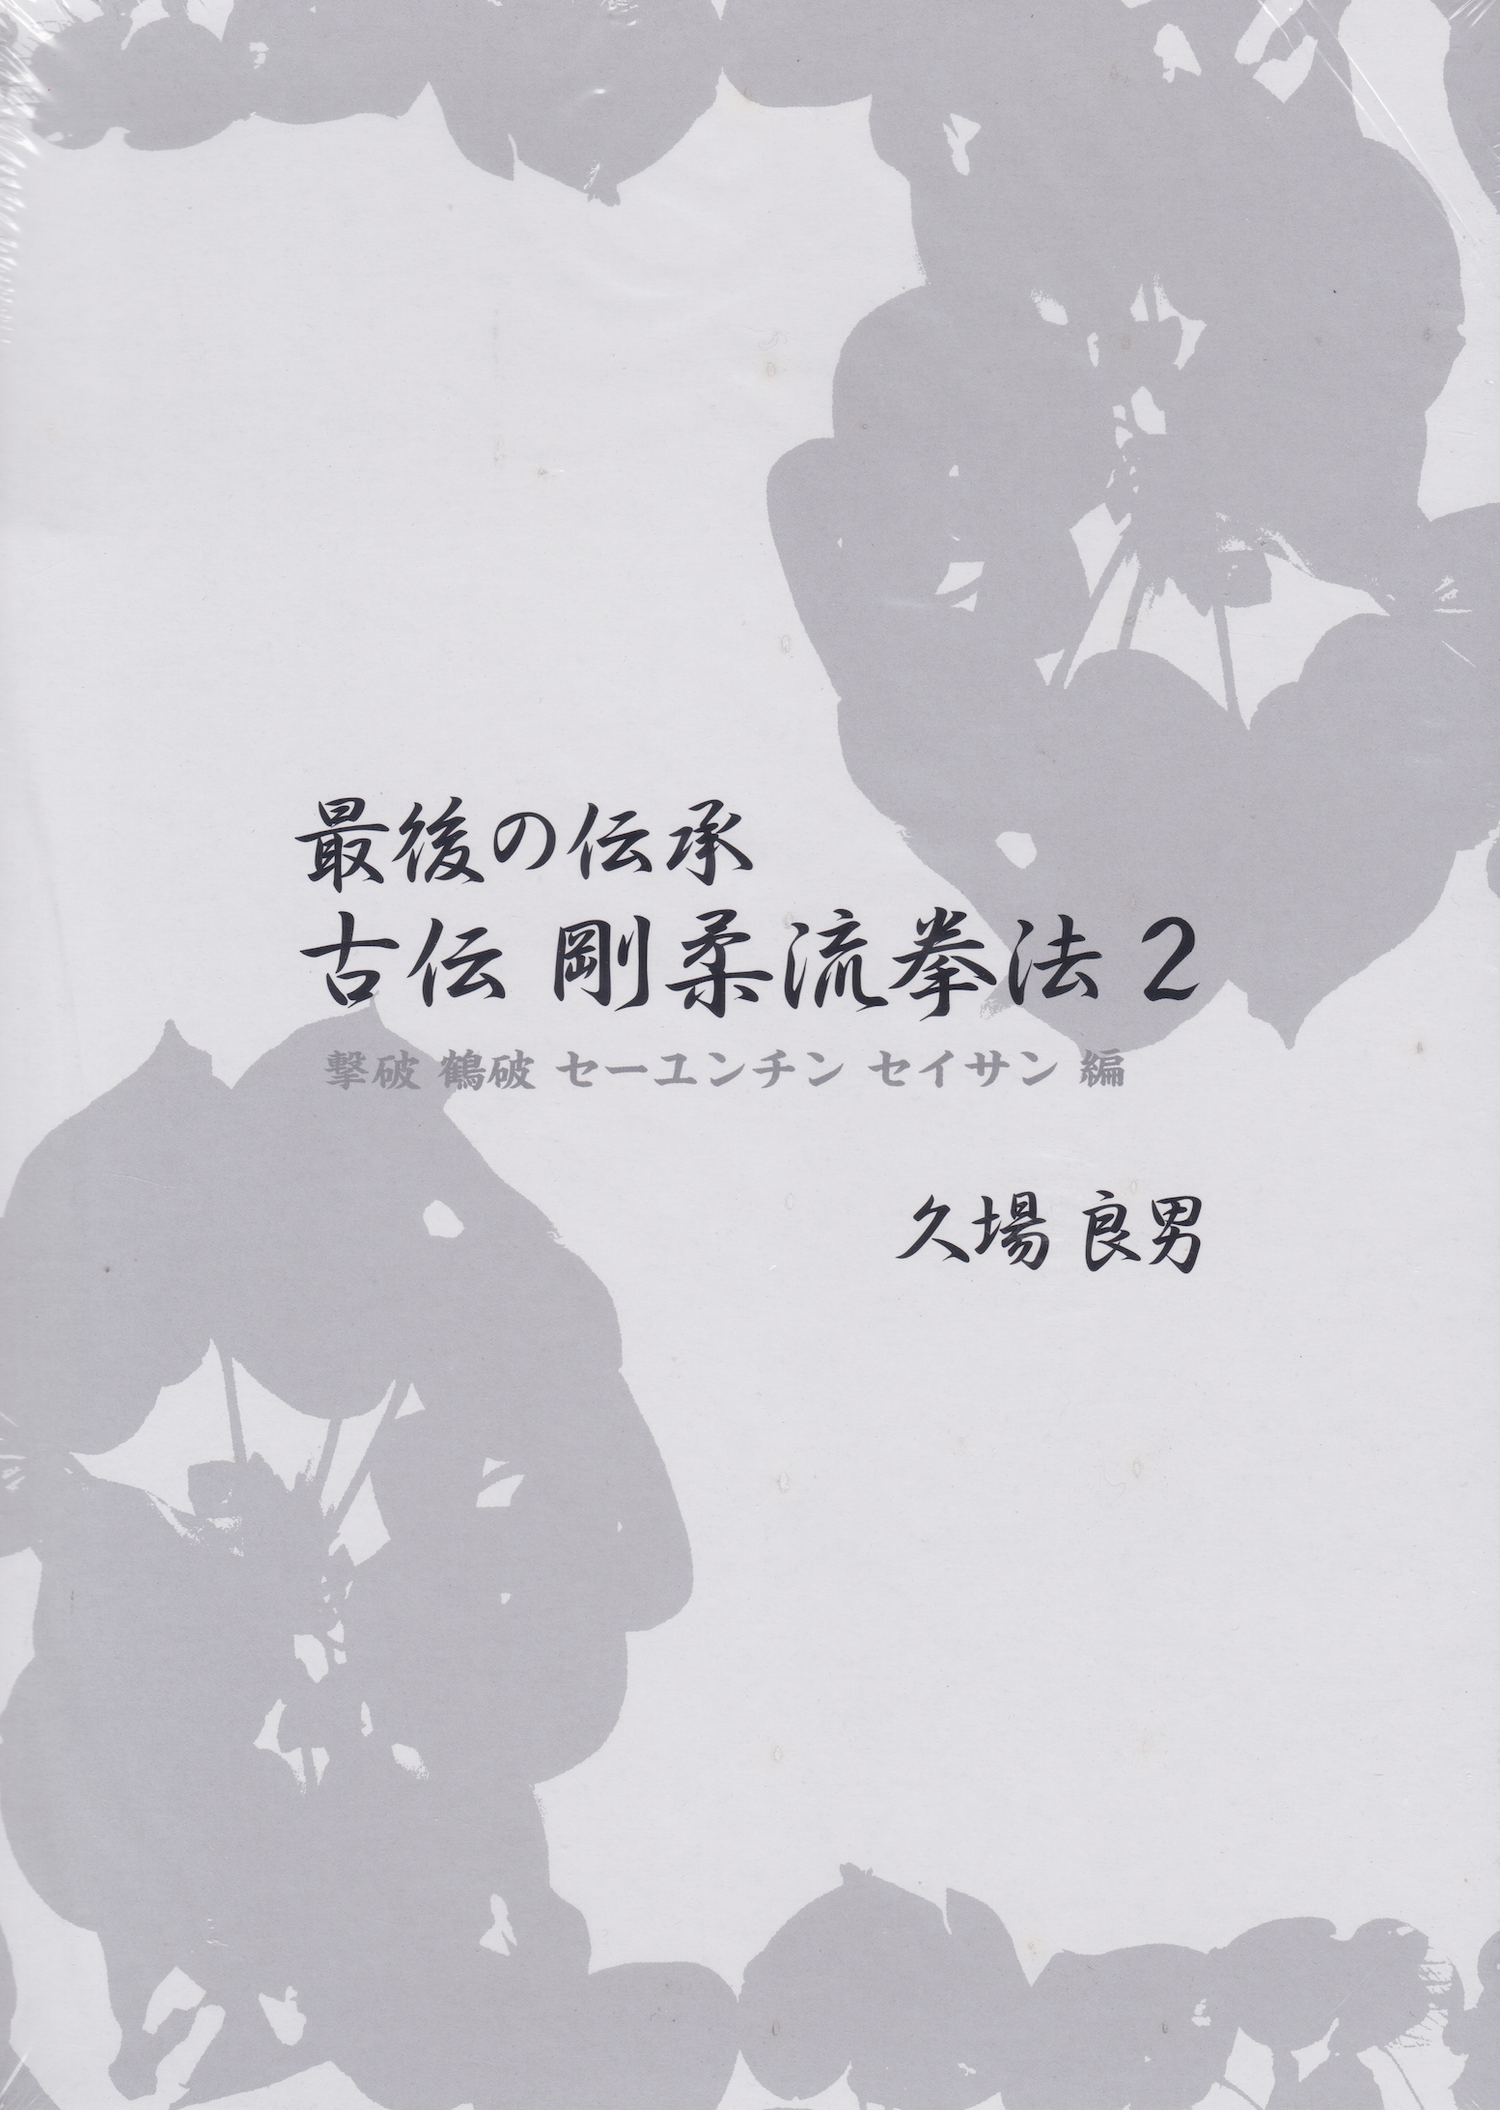 Lógica clásica del último libro y DVD tradicional de Goju-ryu Kempo Vol 2